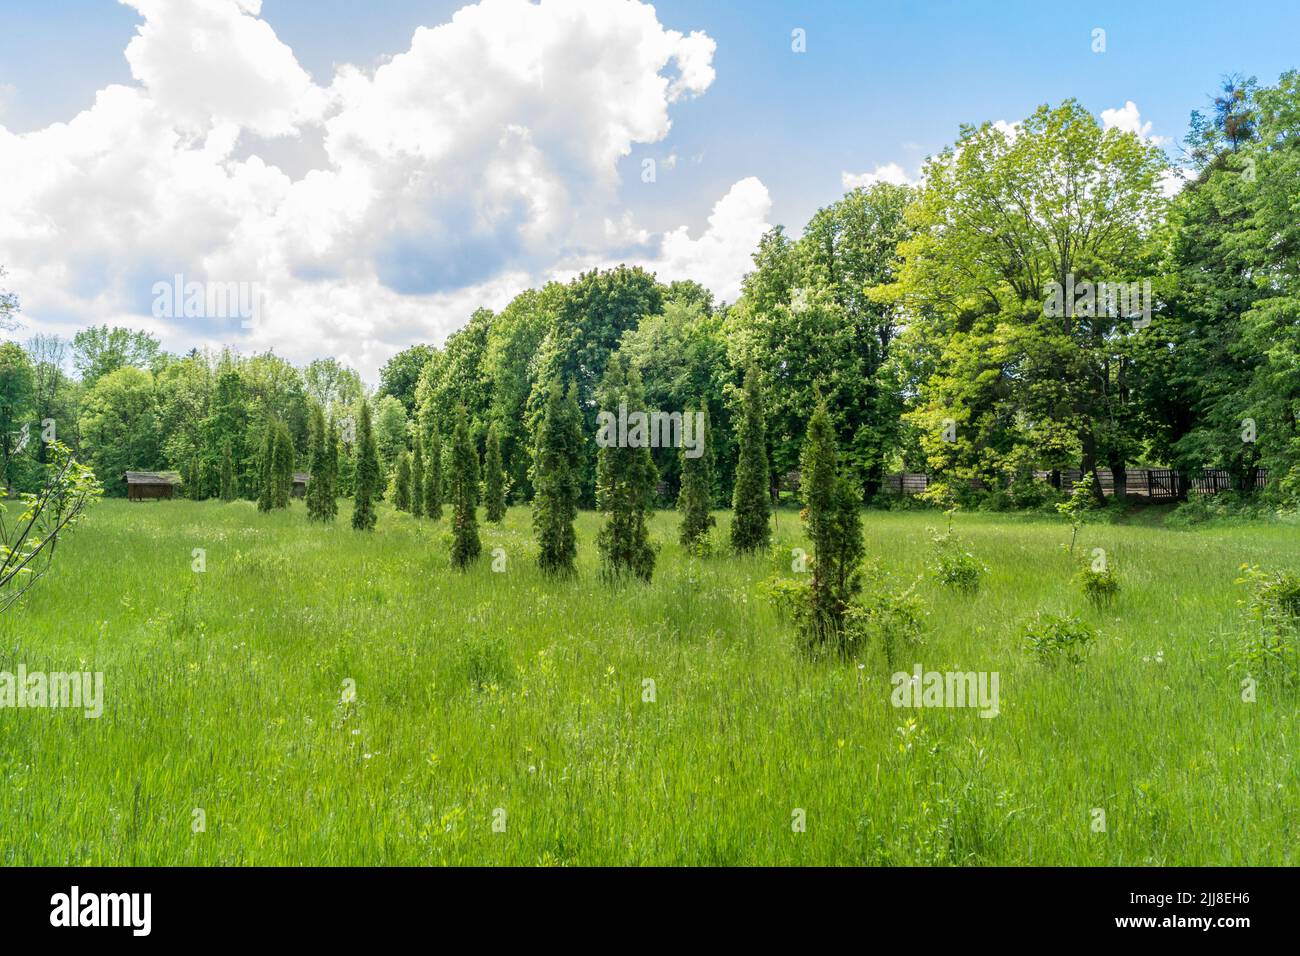 Im Park wachsen in einer Reihe gepflanzte Thuja-Bäume. Grüner Park im Frühjahr Stockfoto